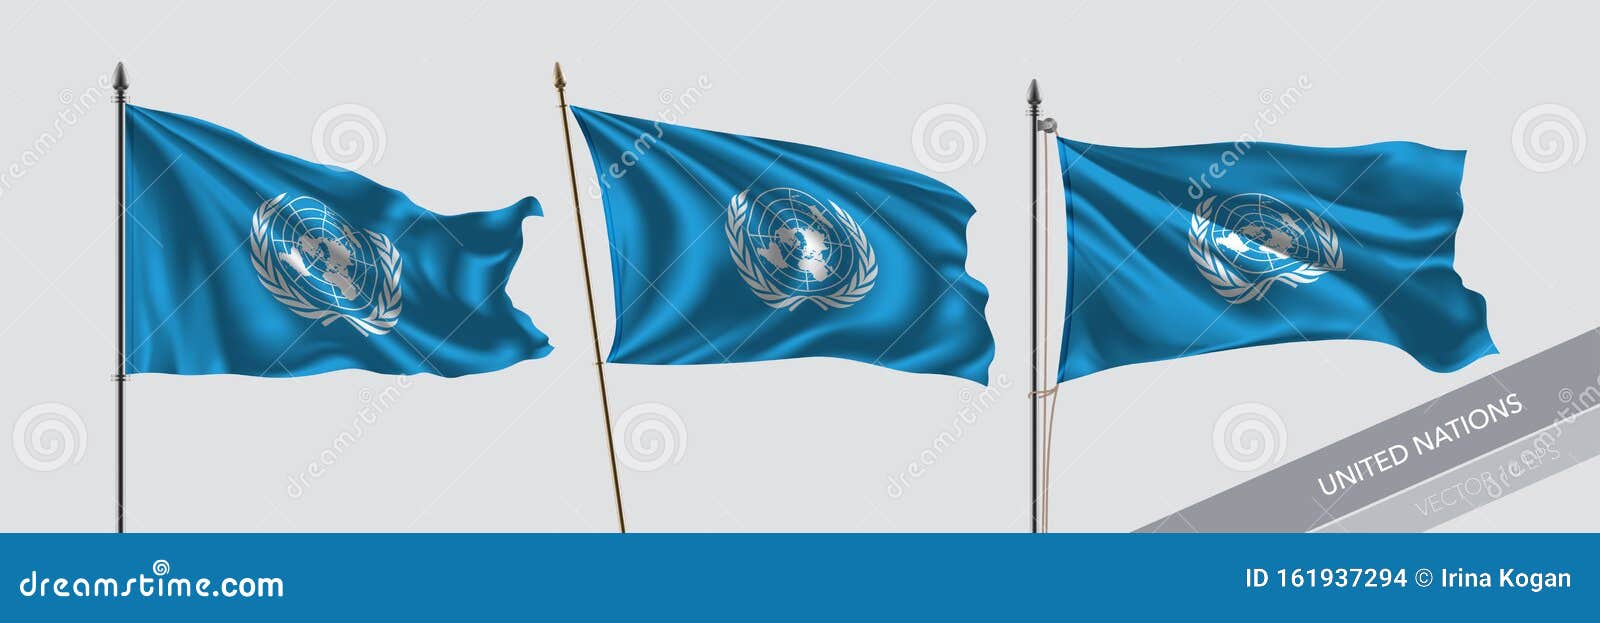 Liên Hợp Quốc là tổ chức đại diện cho hầu hết các quốc gia trên thế giới. Cùng khám phá và hiểu rõ hơn về các nước thành viên trong Liên Hợp Quốc thông qua những hình ảnh đầy chân thật và cảm động.